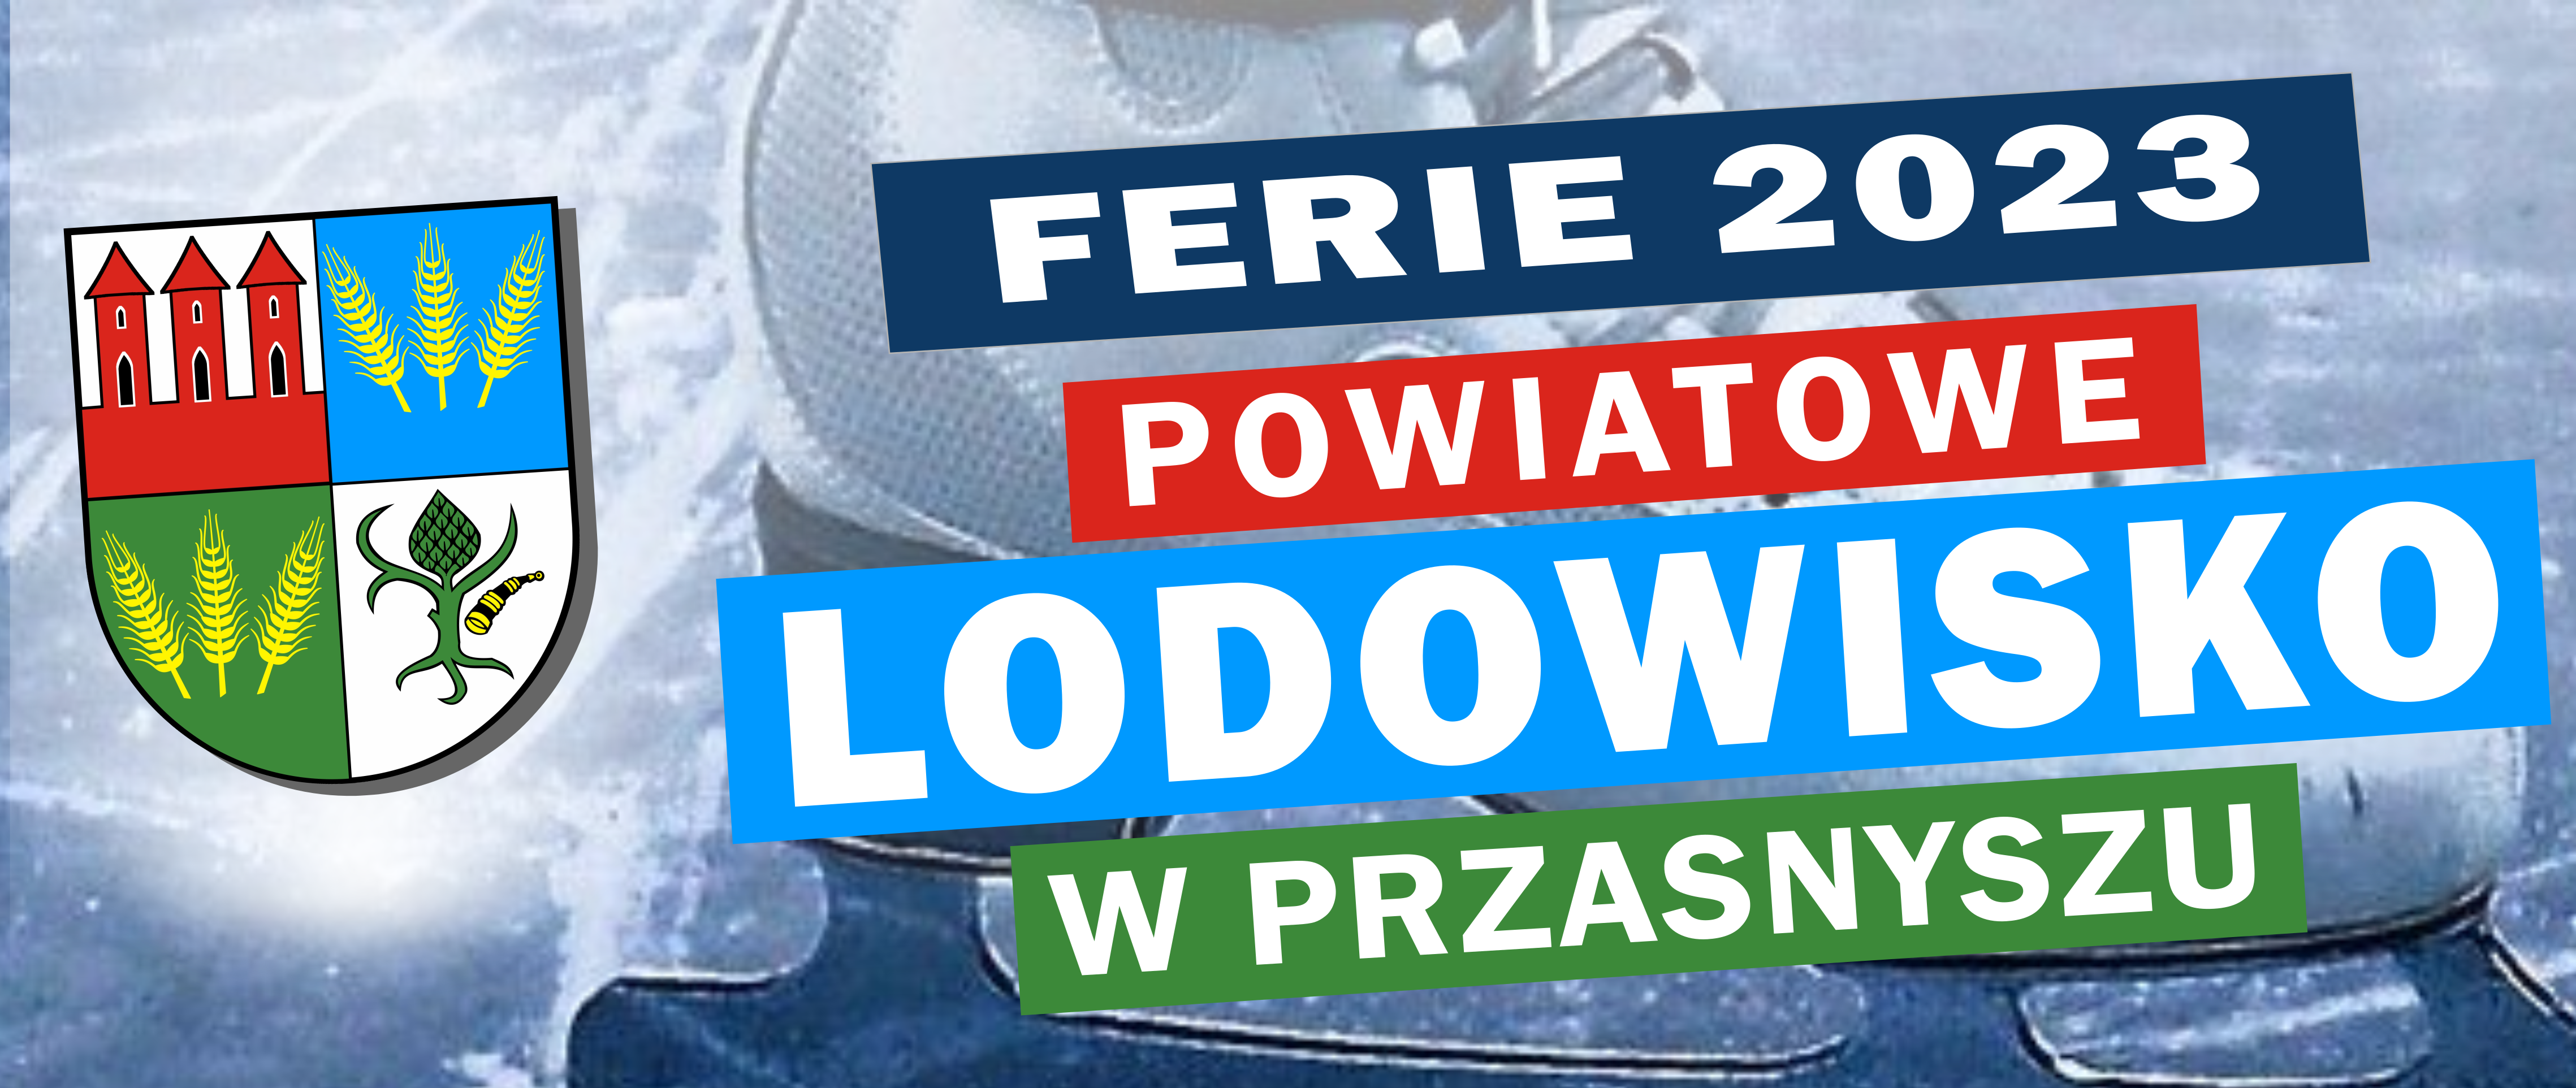 Ferie zimowe 2023 na lodowisku powiatowym w Przasnyszu. Treść w artykule.